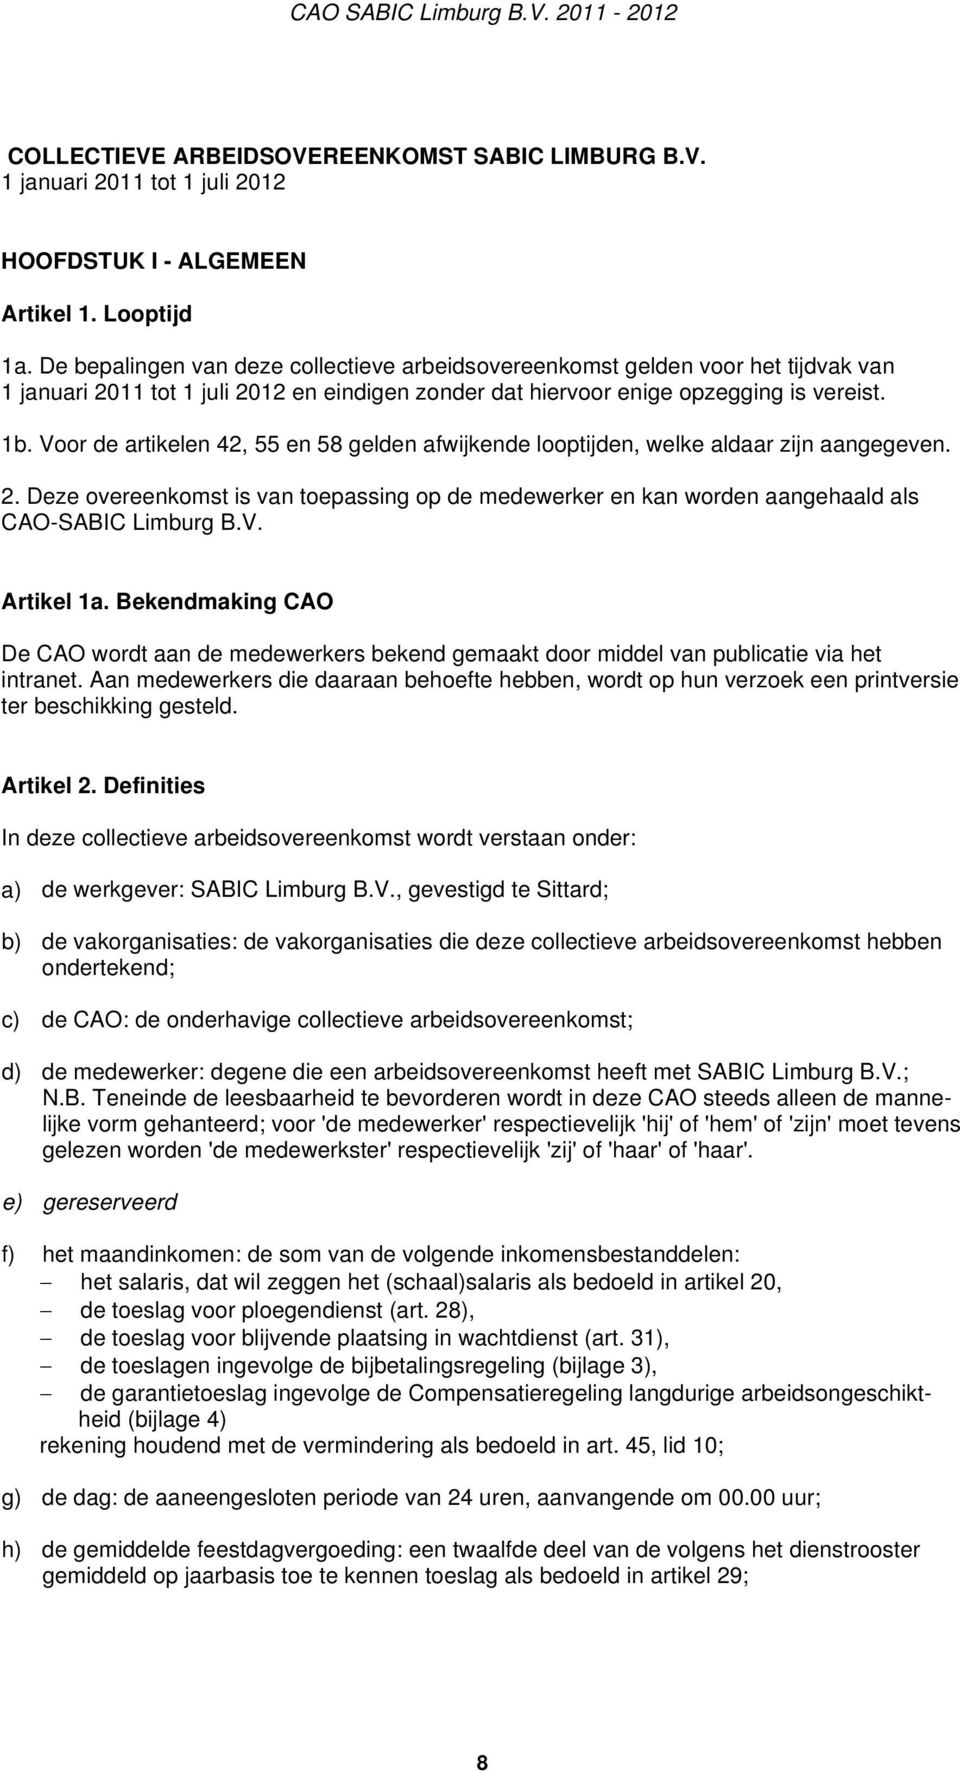 Voor de artikelen 42, 55 en 58 gelden afwijkende looptijden, welke aldaar zijn aangegeven. 2. Deze overeenkomst is van toepassing op de medewerker en kan worden aangehaald als CAO-SABIC Limburg B.V. Artikel 1a.